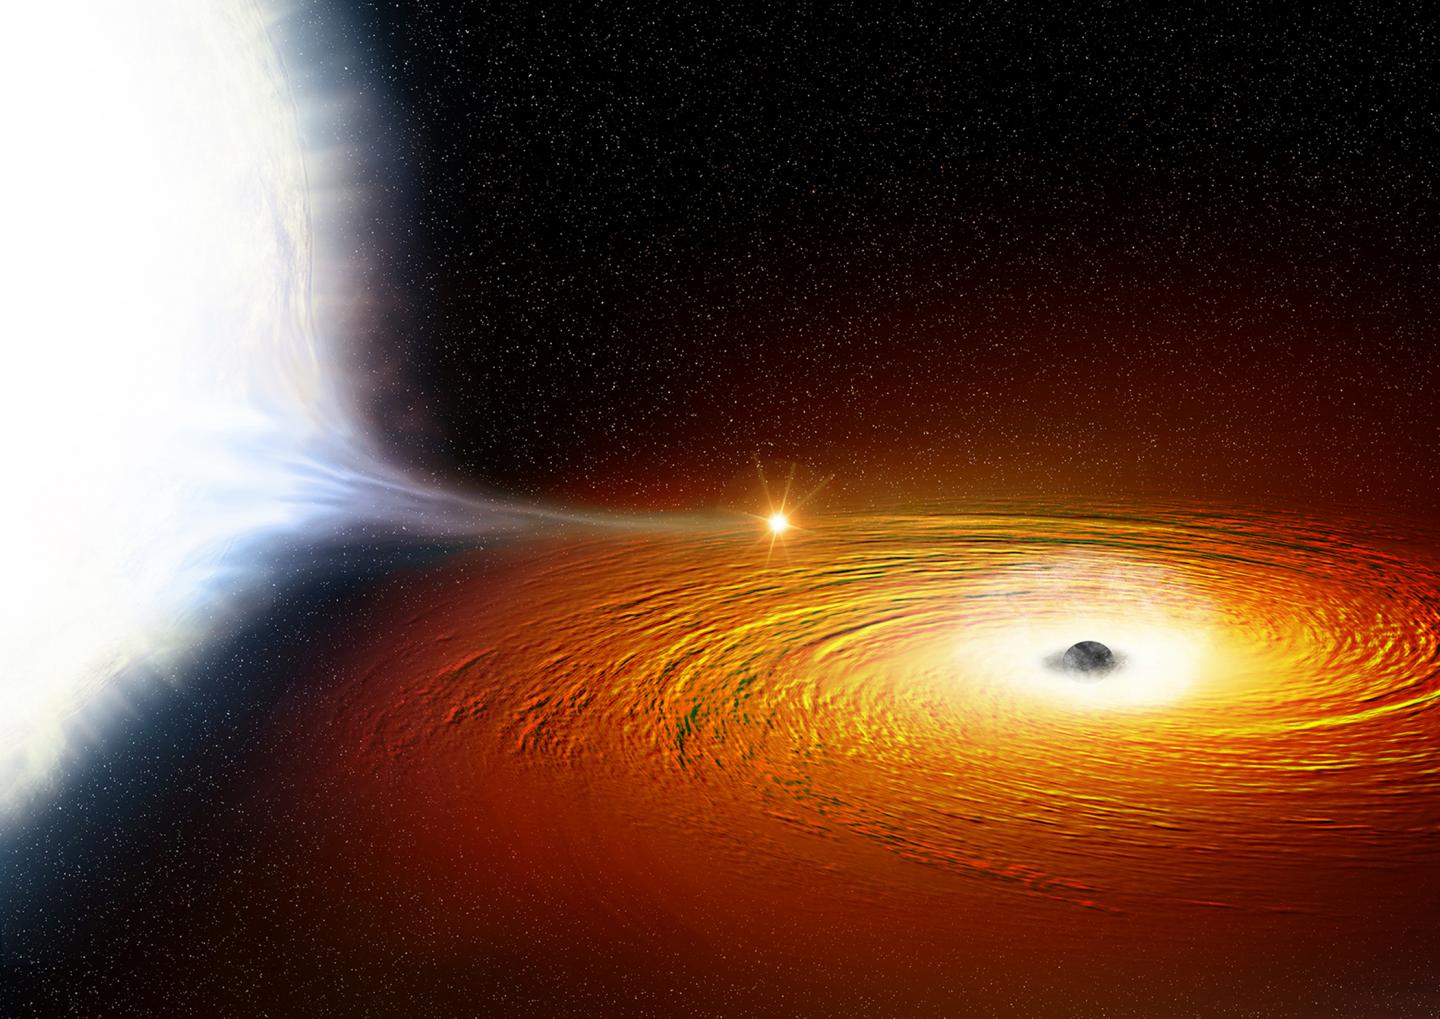 black hole by NASA